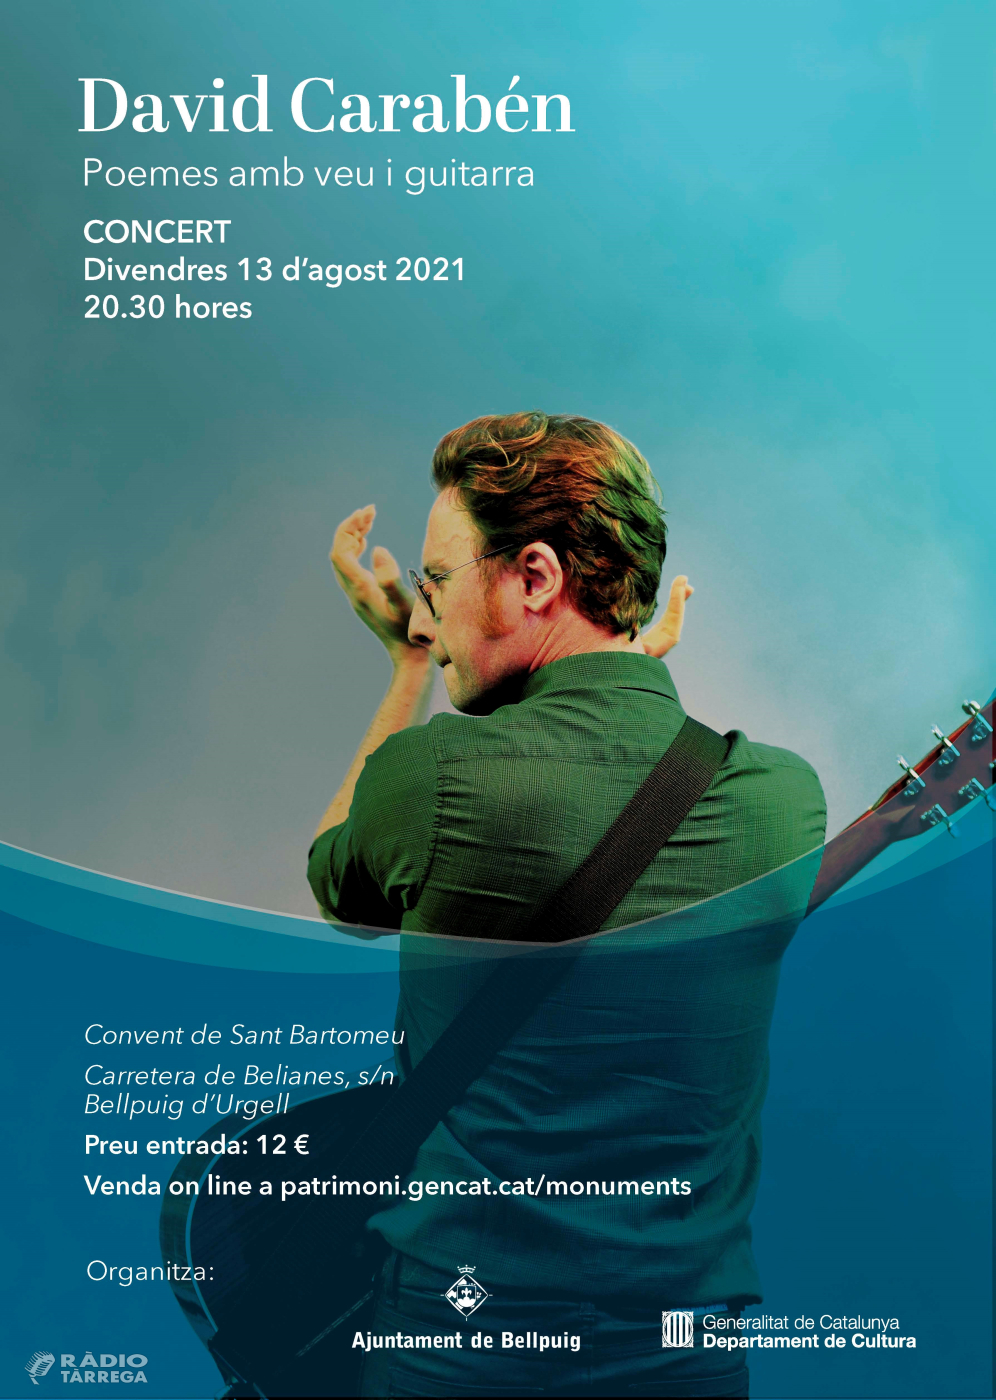 Bellpuig viu el patrimoni aquest estiu amb el concert ‘Poemes amb veu i guitarra’ de David Carabén al convent de Sant Bartomeu el pròxim 13 d’agost